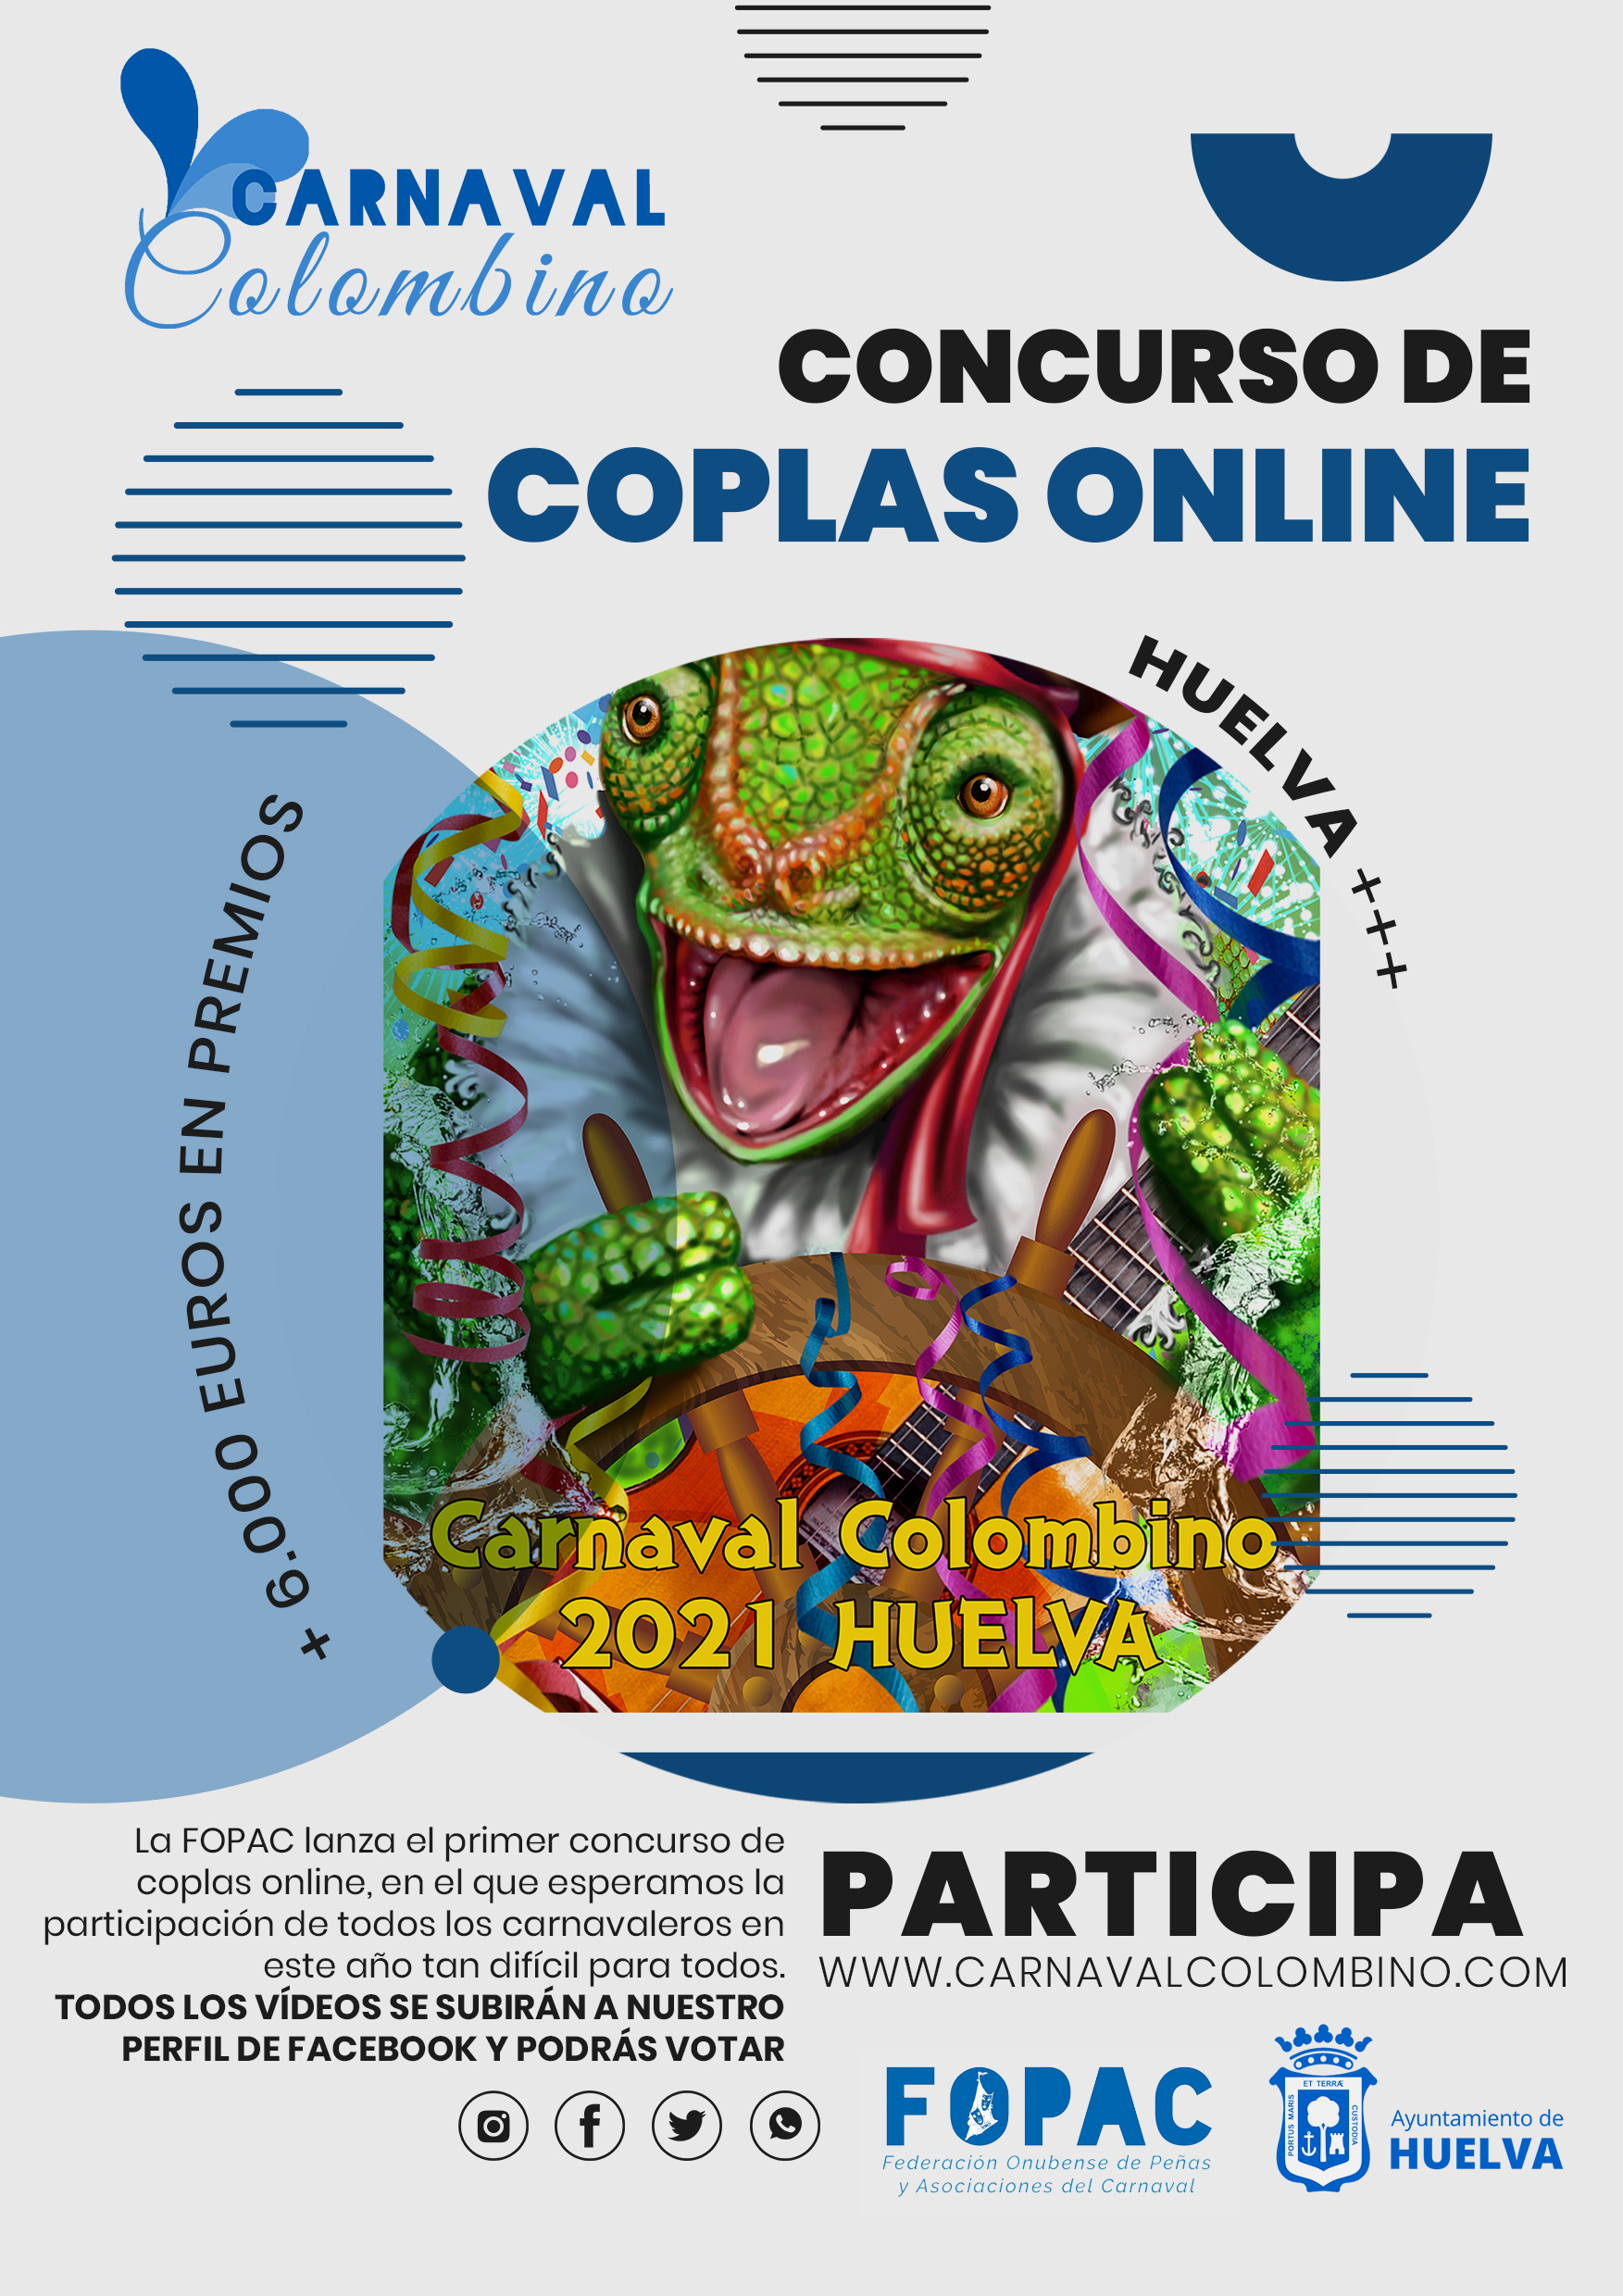 El Carnaval Colombino 2021 Tendrá un Concurso de Coplas, pero será Online